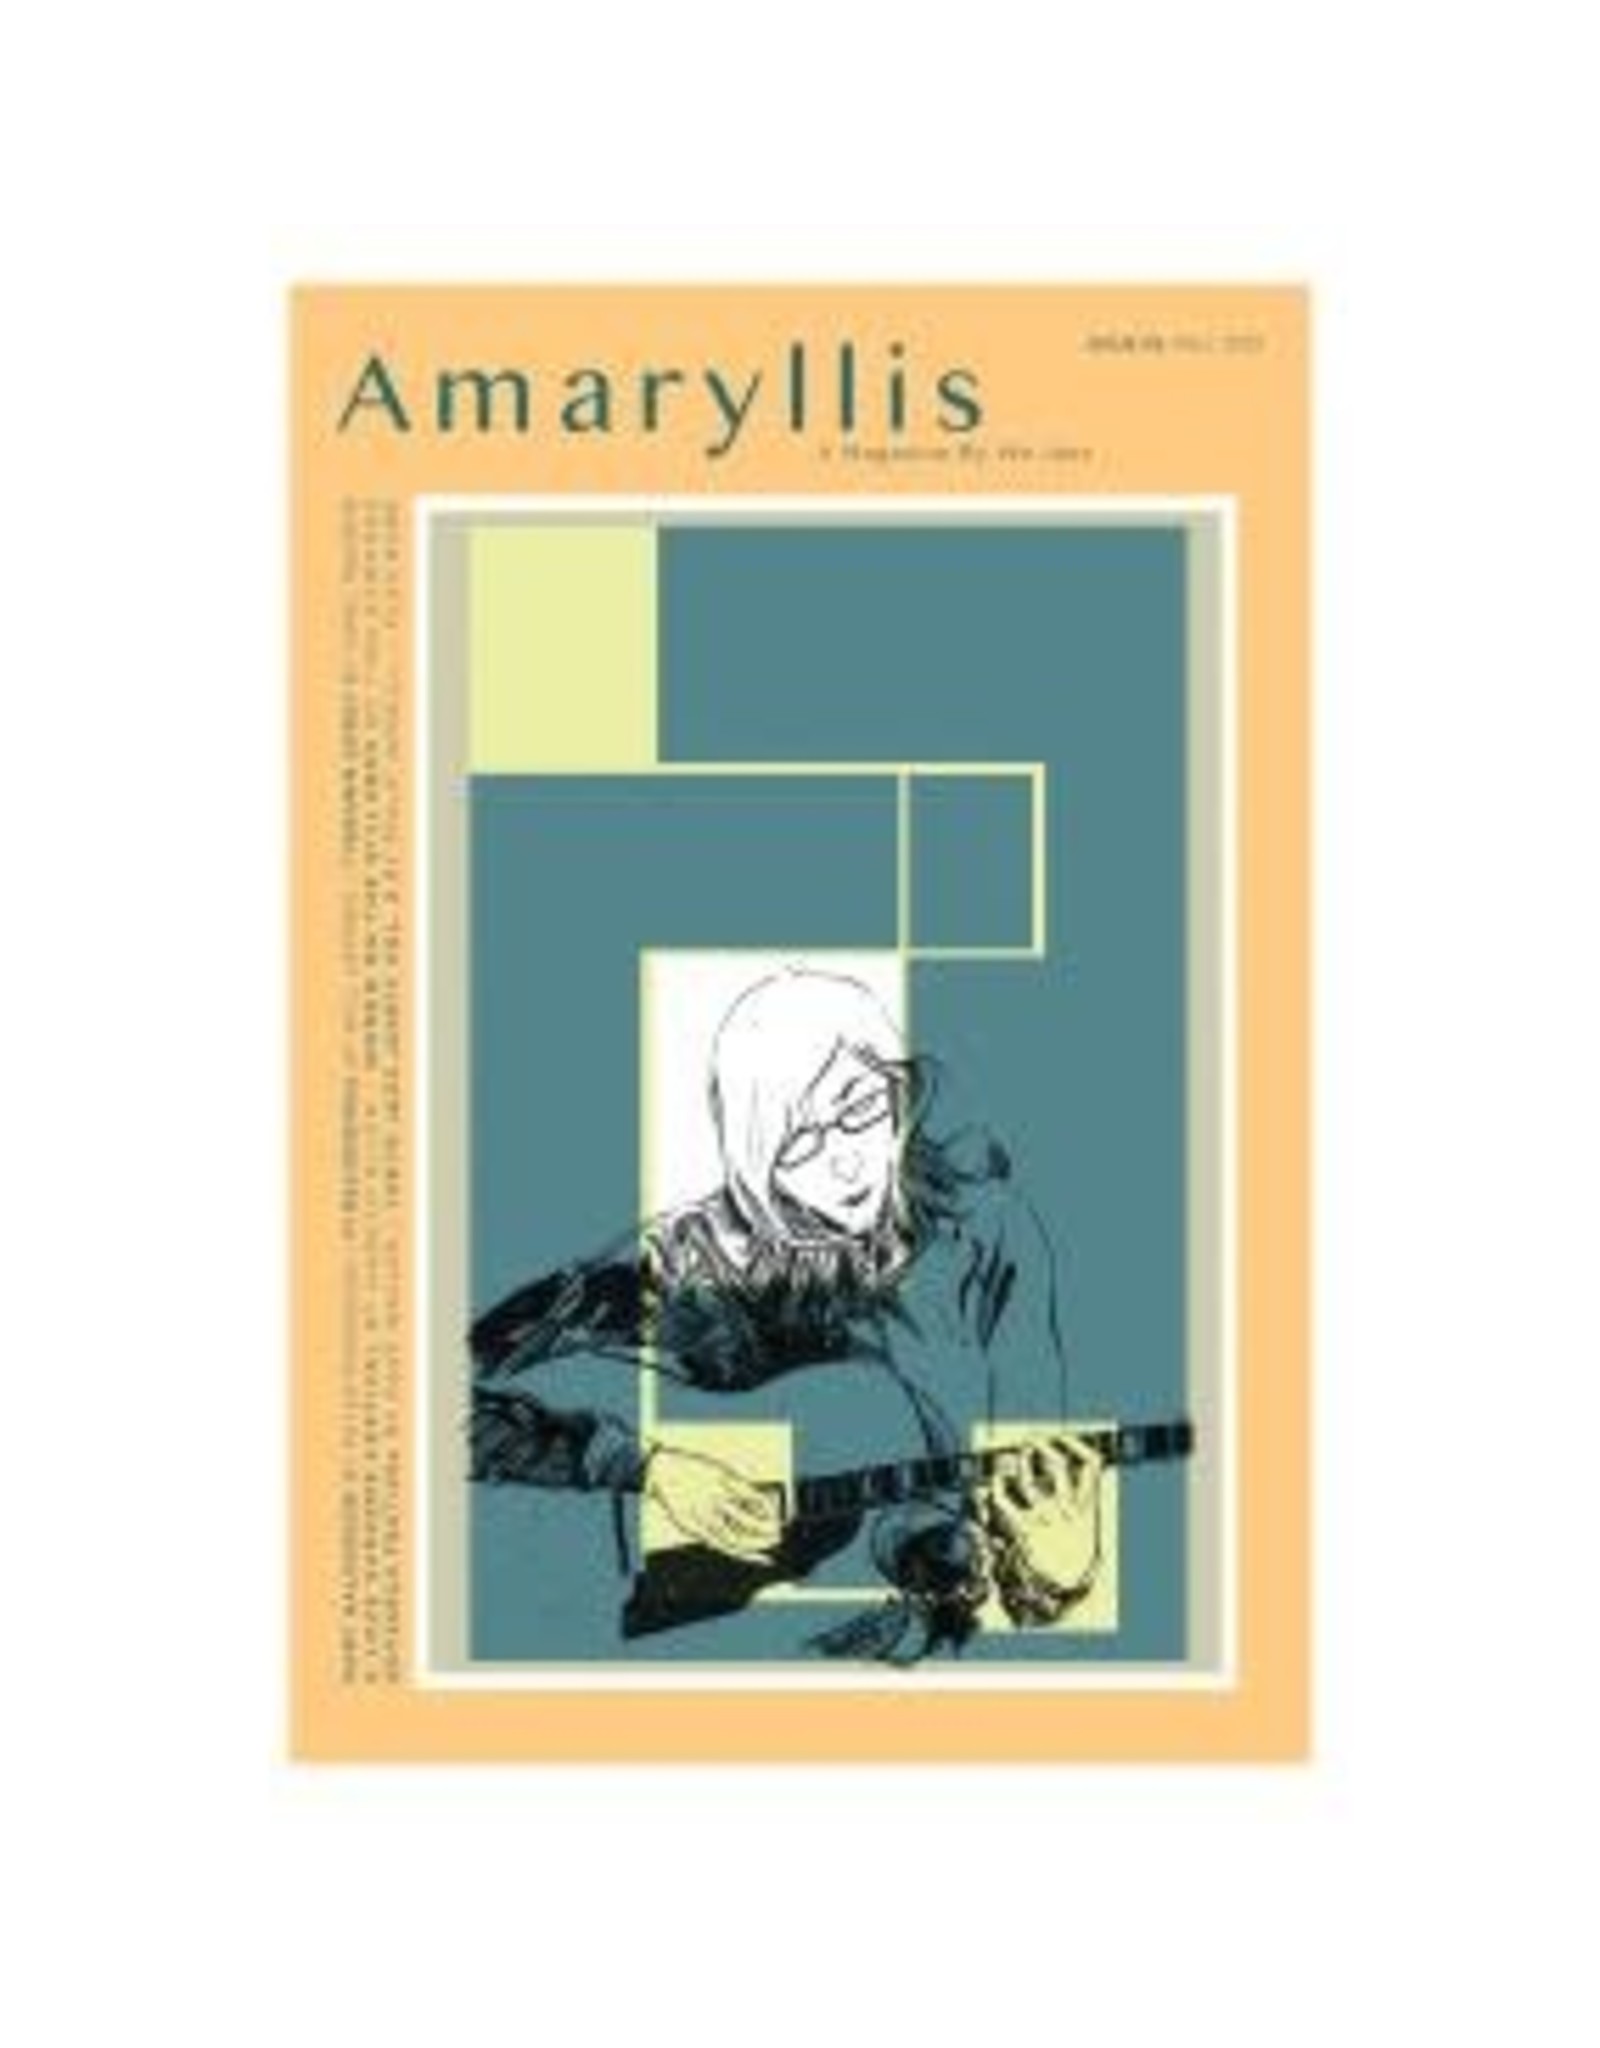 We Jazz We Jazz Magazine: Issue 5: "Amaryllis" MAG